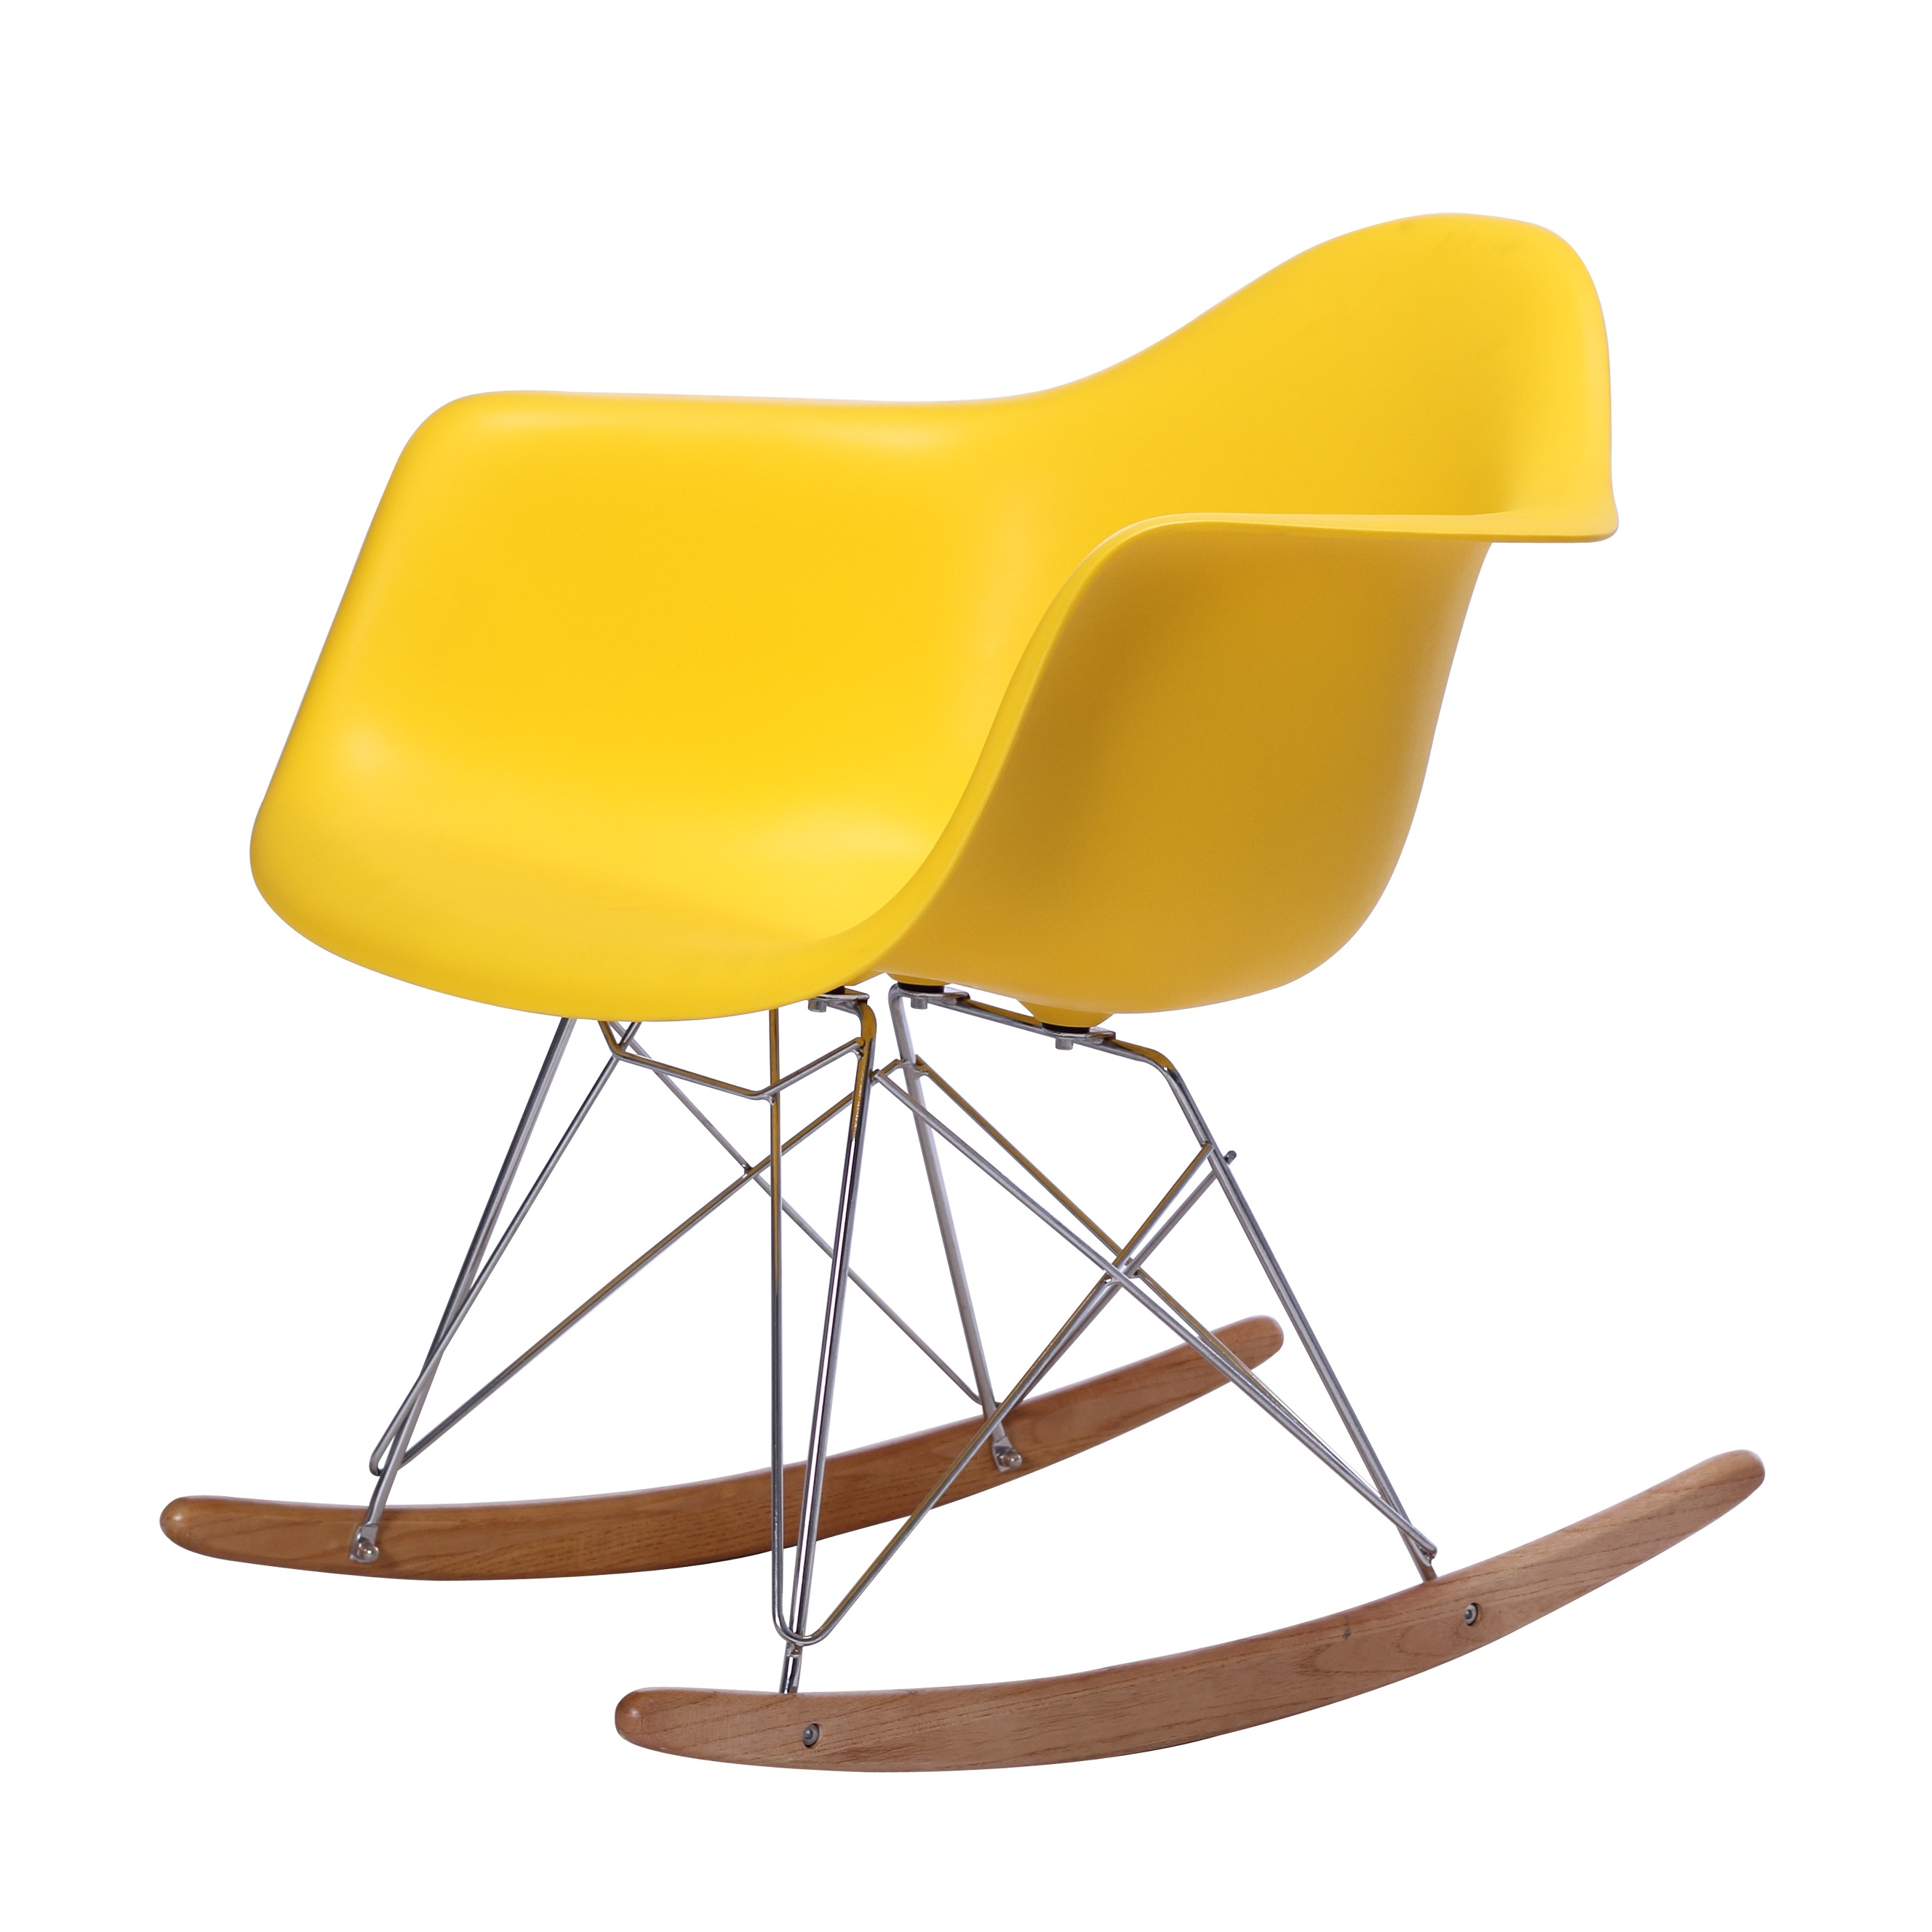 Replica Eames Rar Rocking Chair